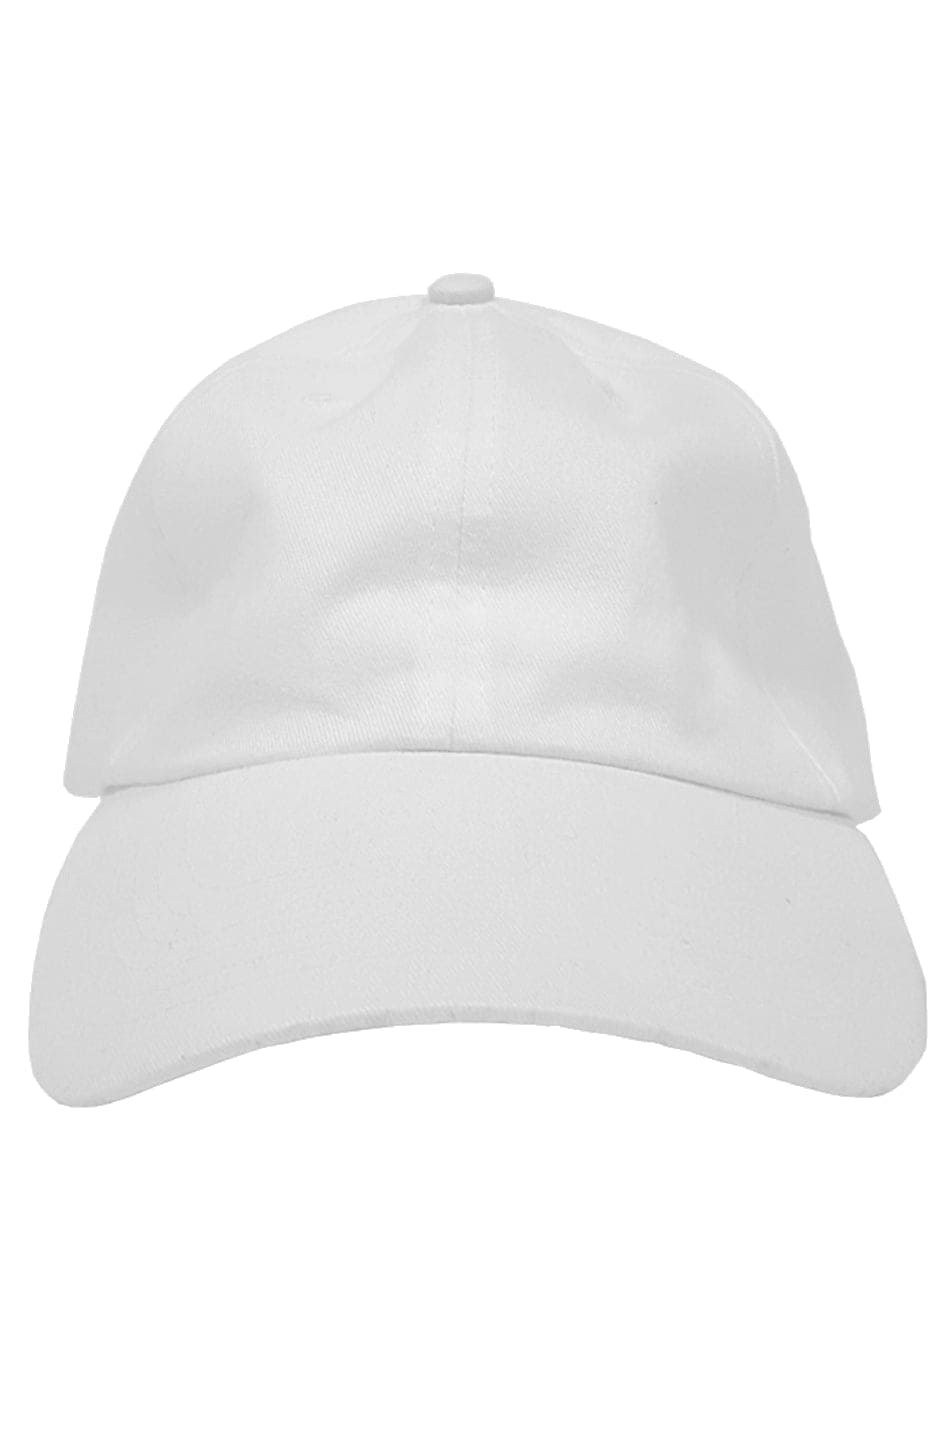 Athletic Apparatus White premium dad hat